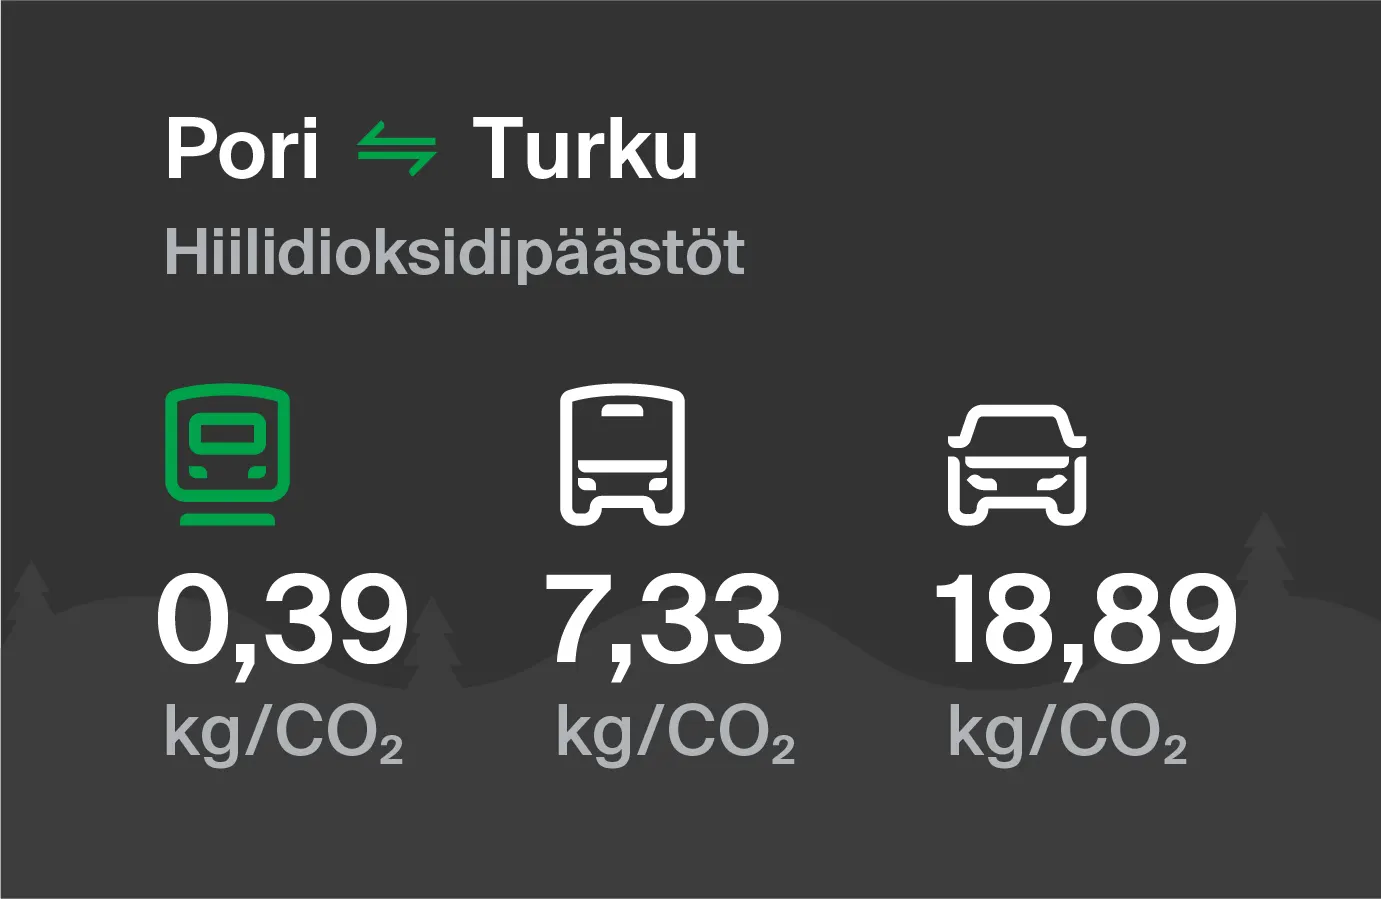 Koldioxidutsläpp från Björneborg till Åbo genom olika transportsätt: med tåg 0,39 kg/CO2, med buss 7,33 kg/CO2 och med bil 18,89 kg/CO2.